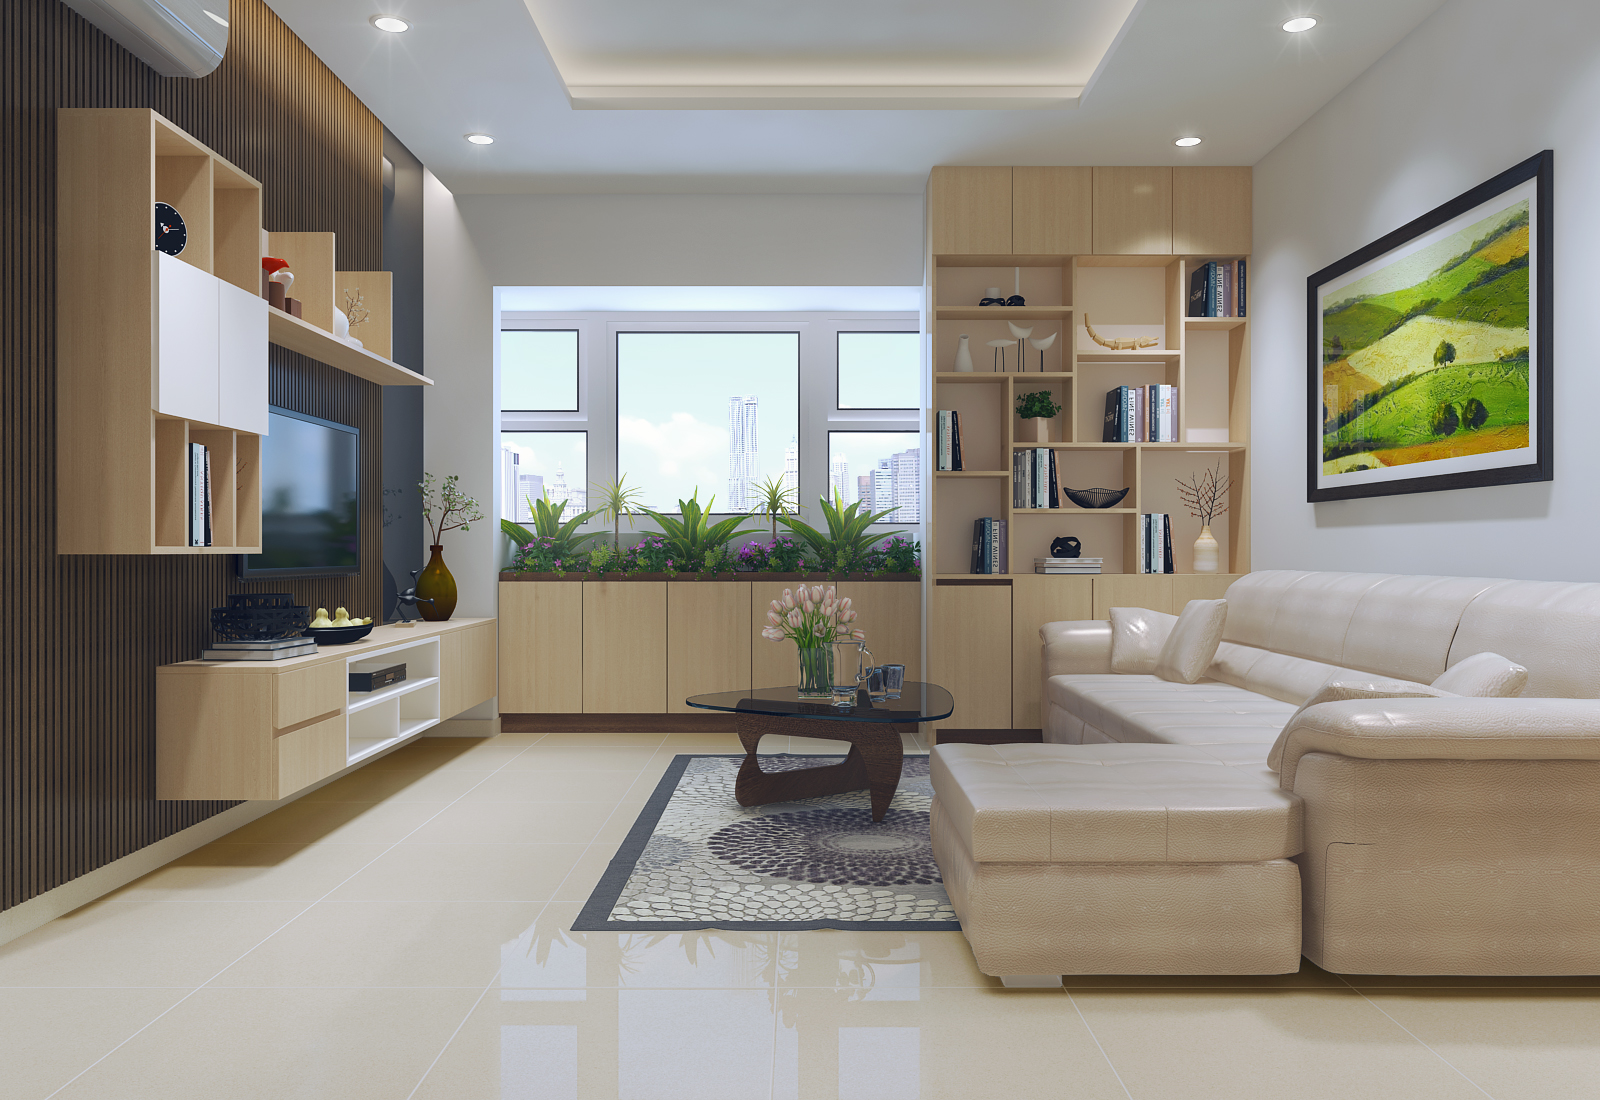 Thiết kế nội thất căn hộ hiện đại để tối ưu hóa công năng phòng bếp 2